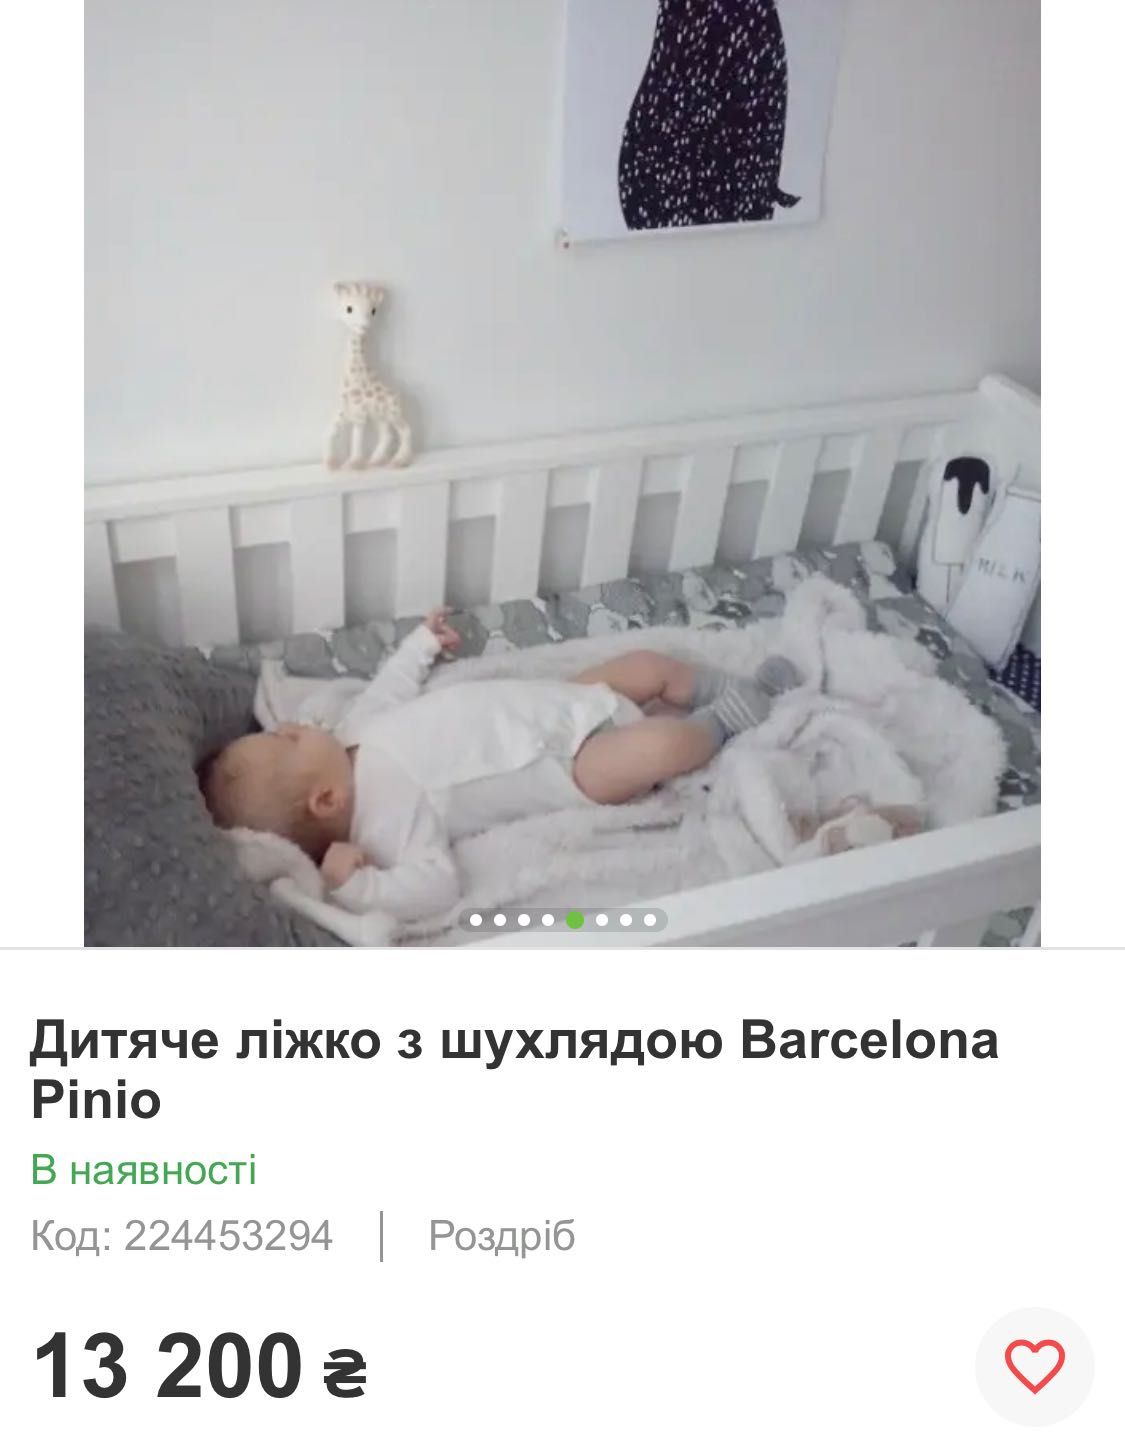 Дитяче ліжко Pinio Barcelona